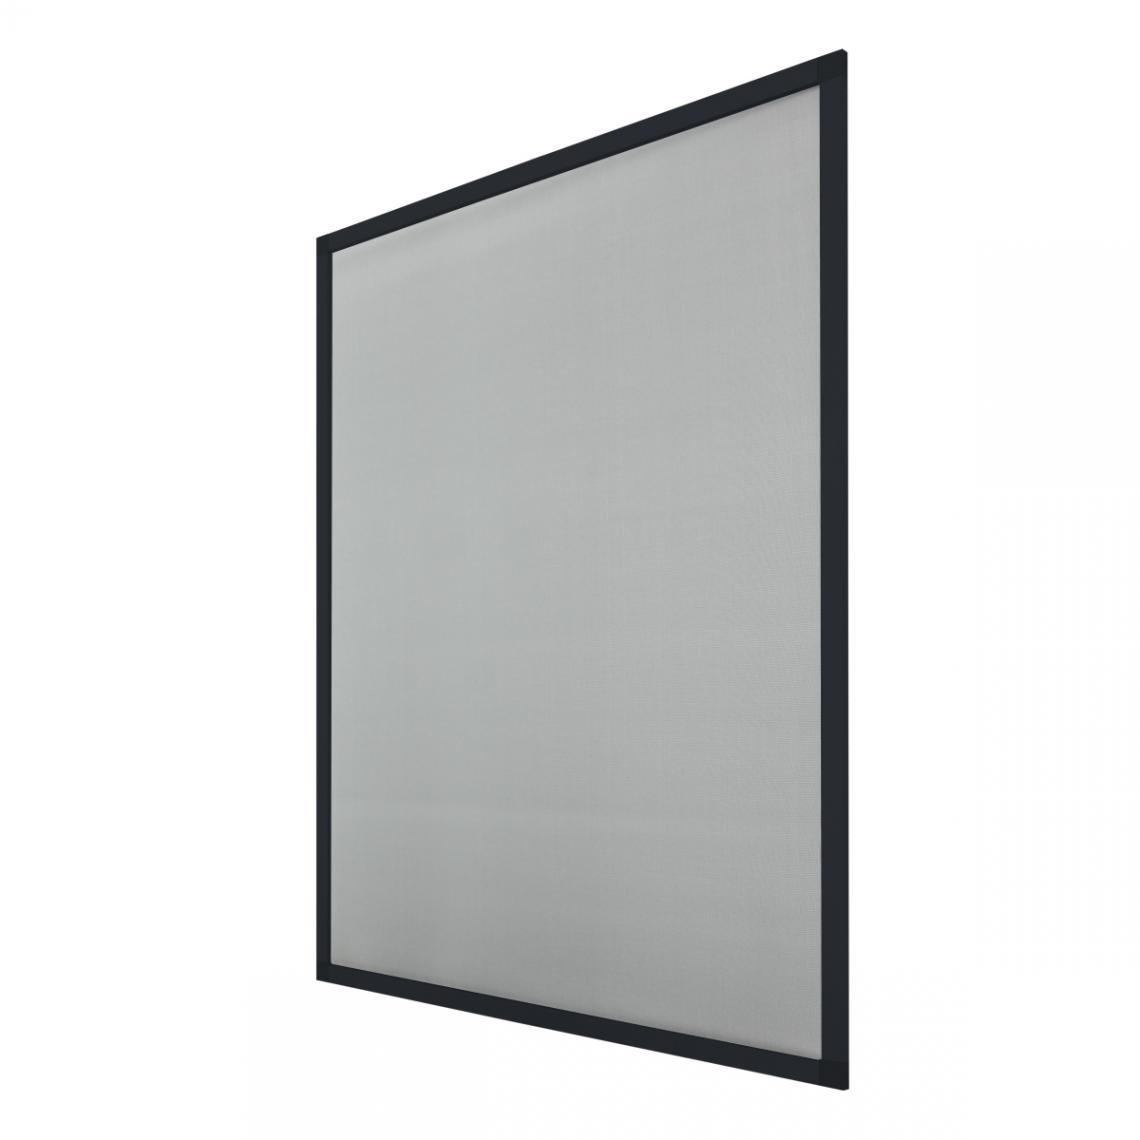 Ecd Germany - 5 x moustiquaire cadre en aluminium anthracite 100 x 120 cm - Moustiquaire Fenêtre